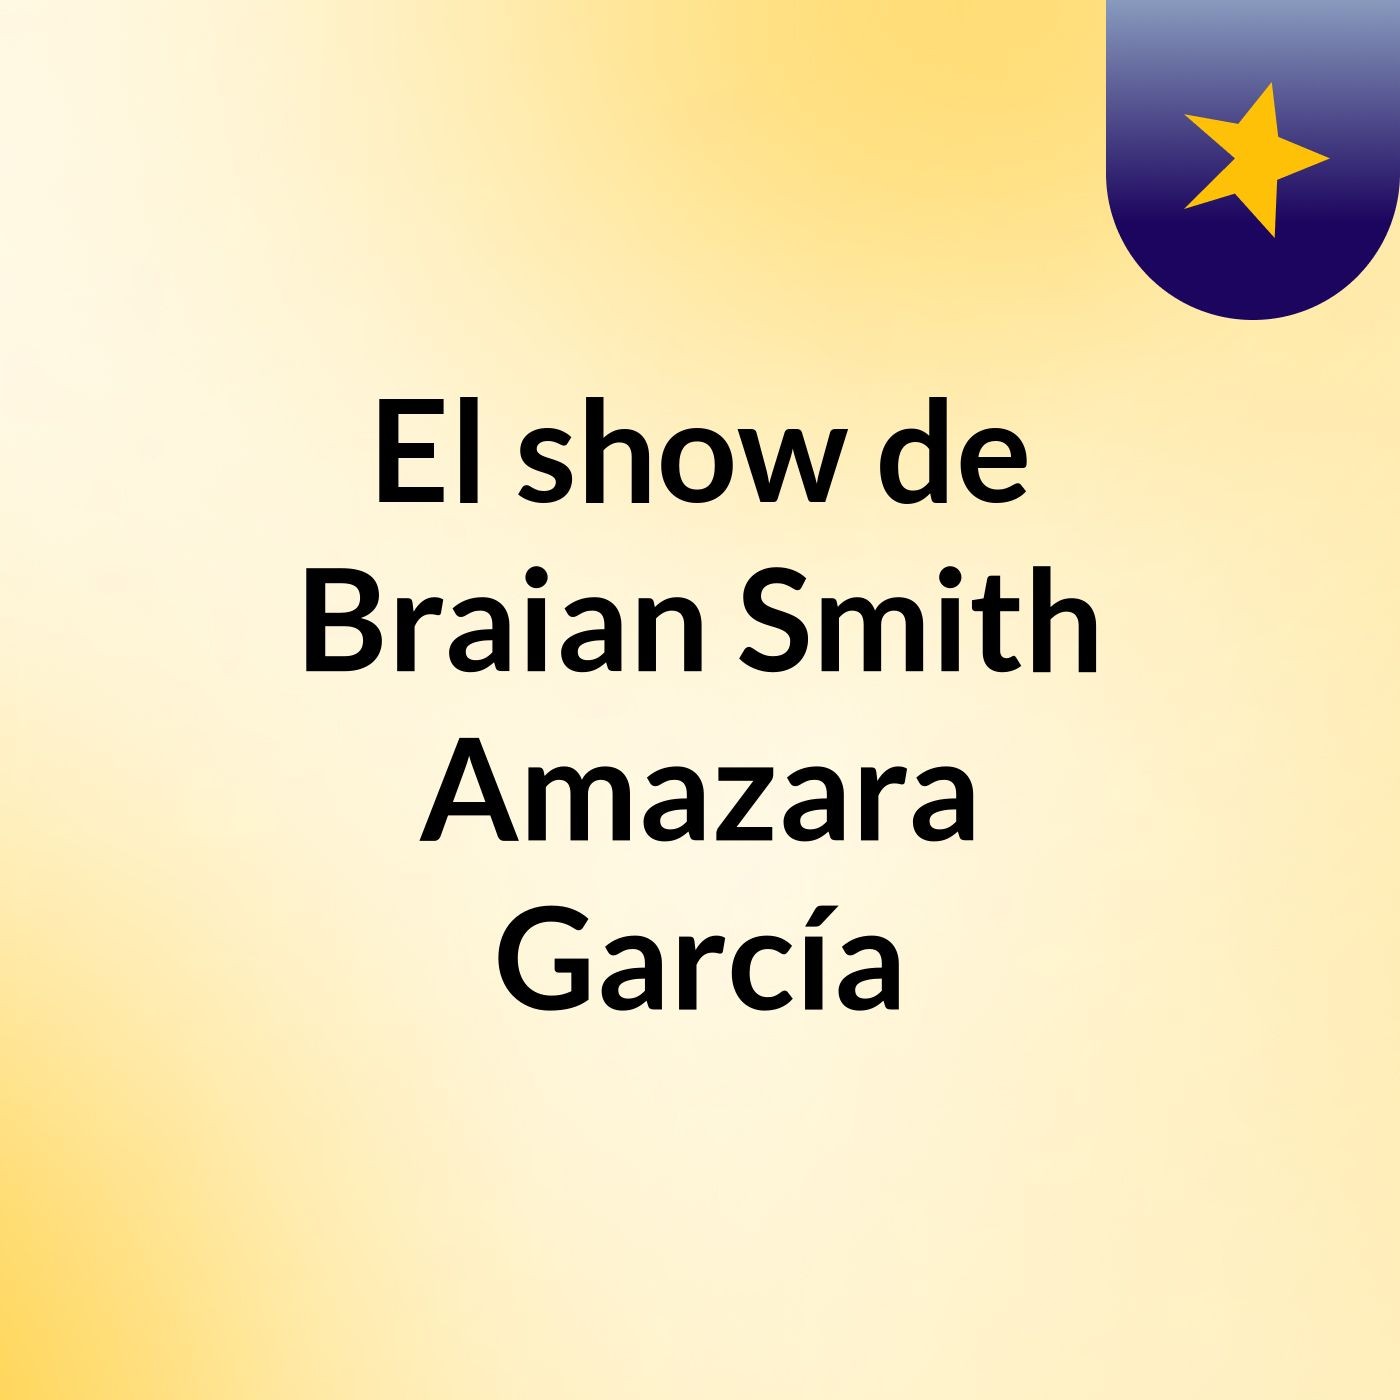 El show de Braian Smith Amazara García